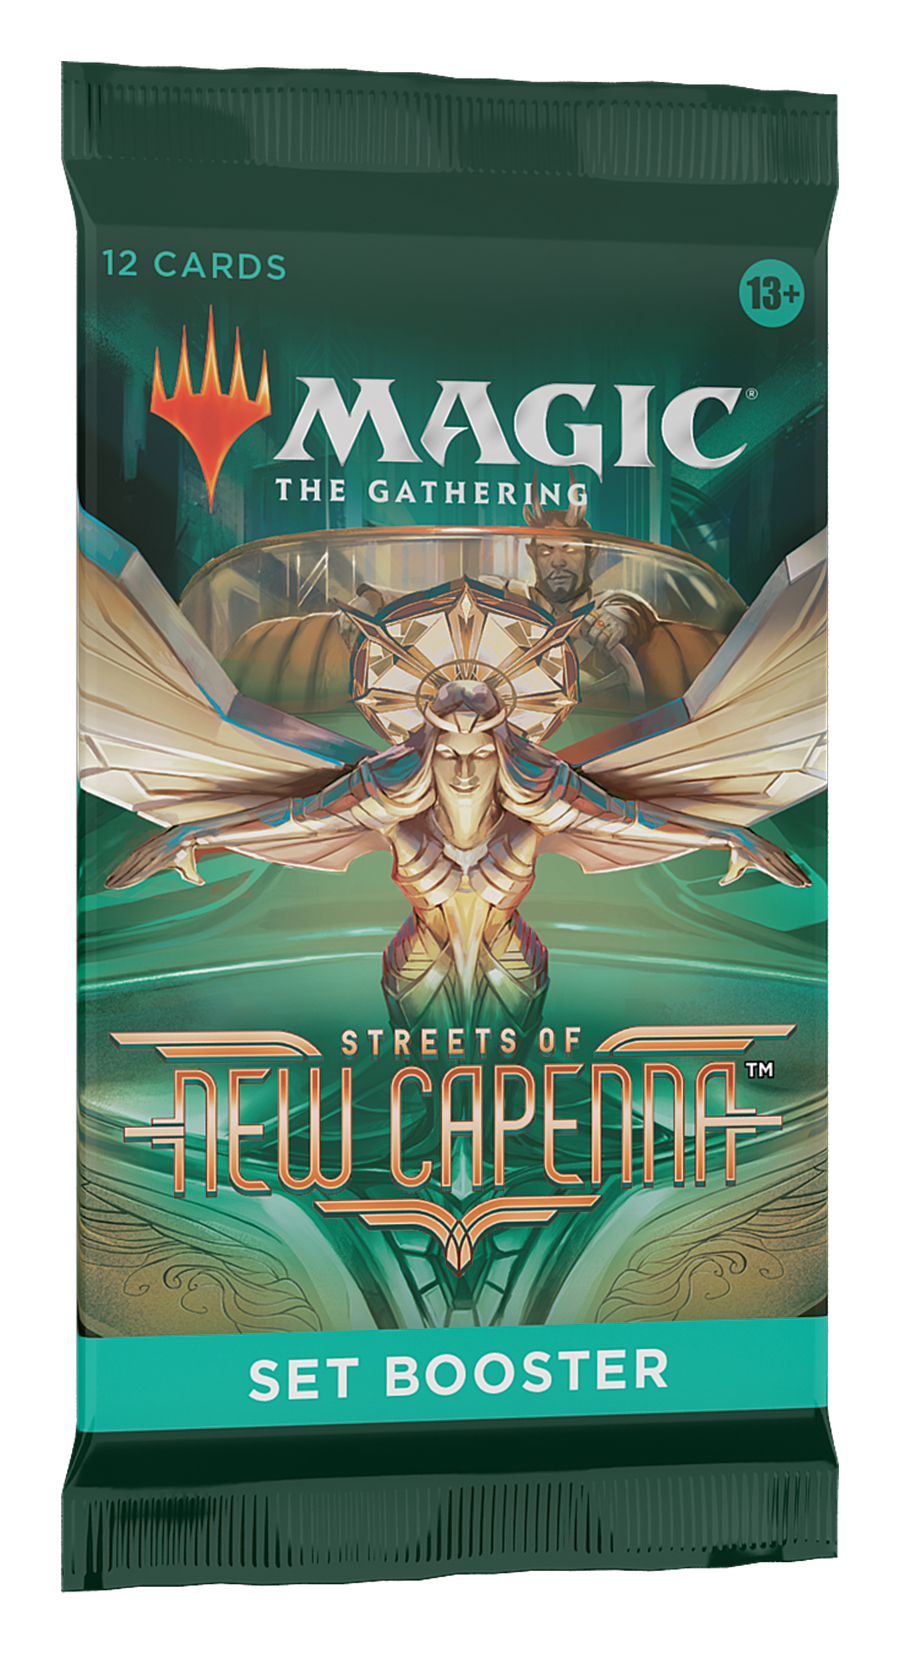 Magic: The Gathering - Zendikar Rising Set Booster Box - Game Nerdz